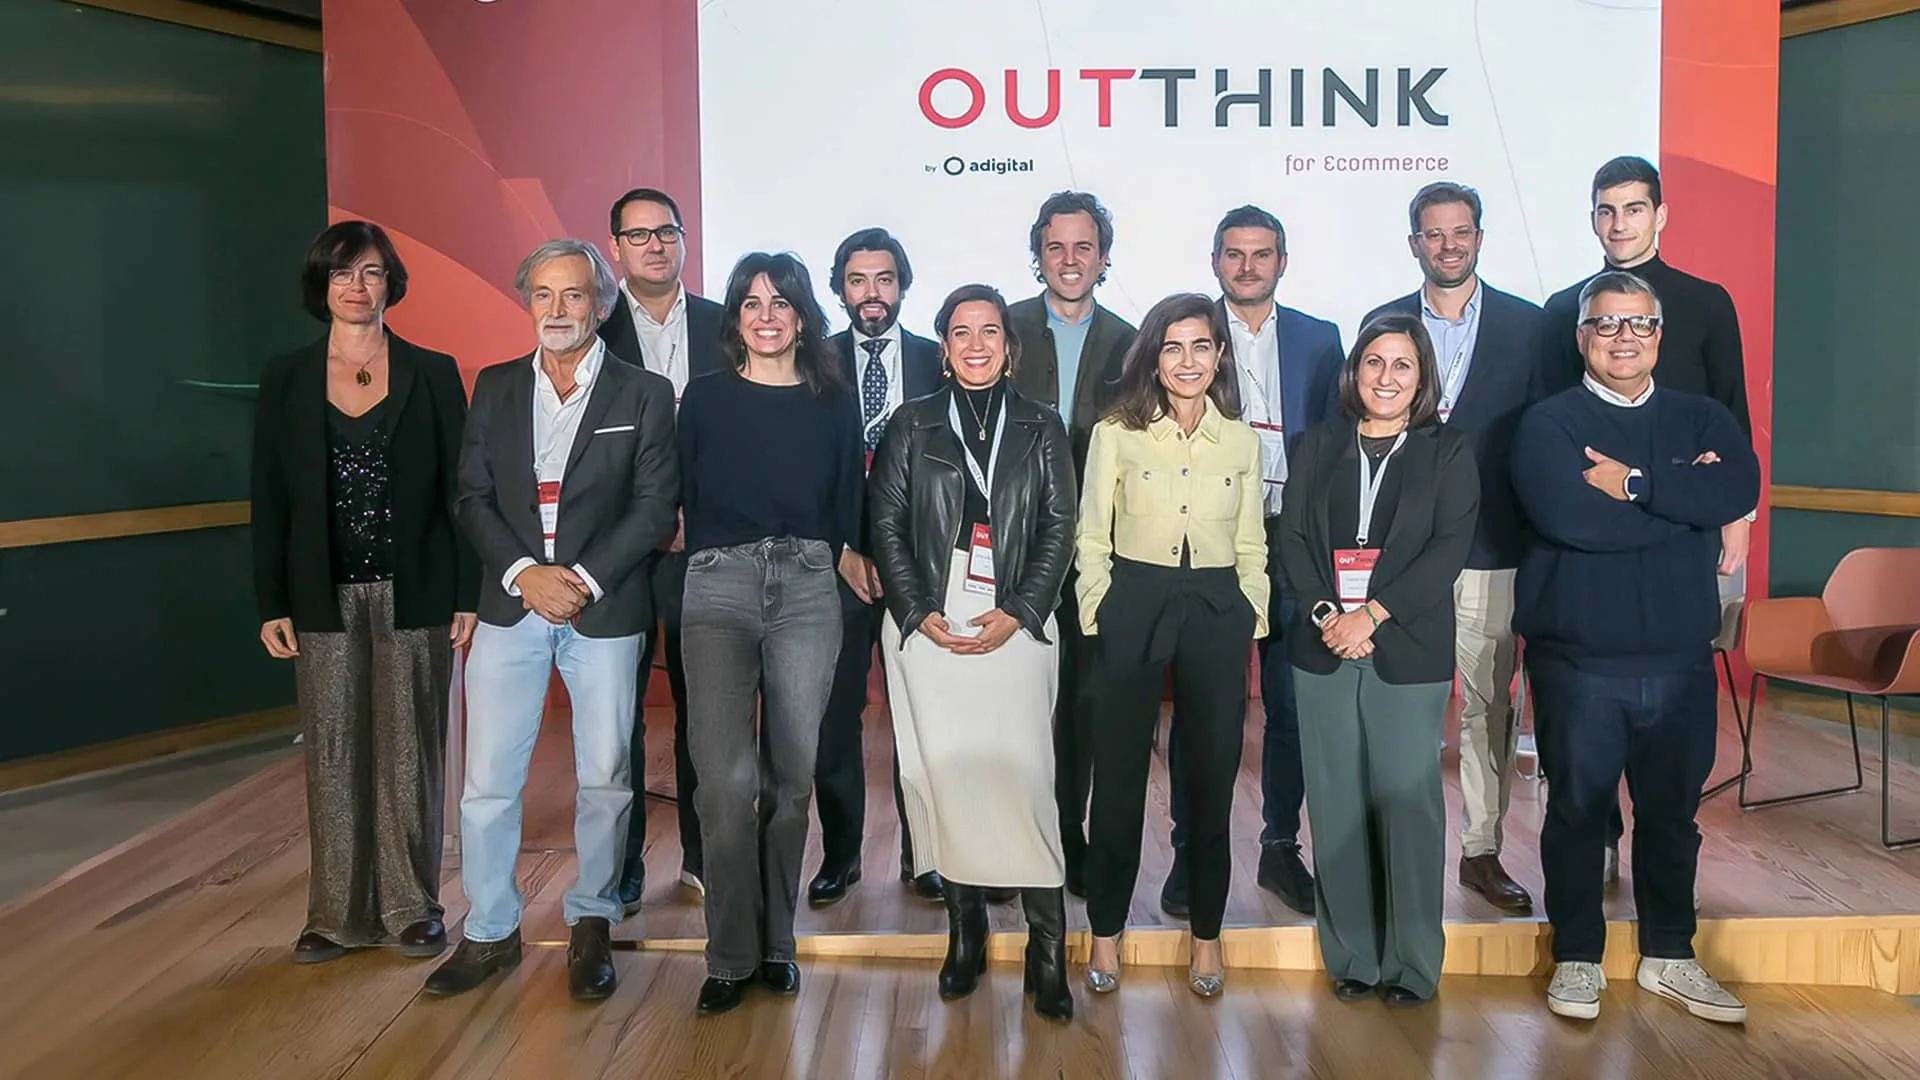 Adigital celebra ‘OutThink for Ecommerce’ para analizar el papel del ecommerce en el impulso a las pymes españolas